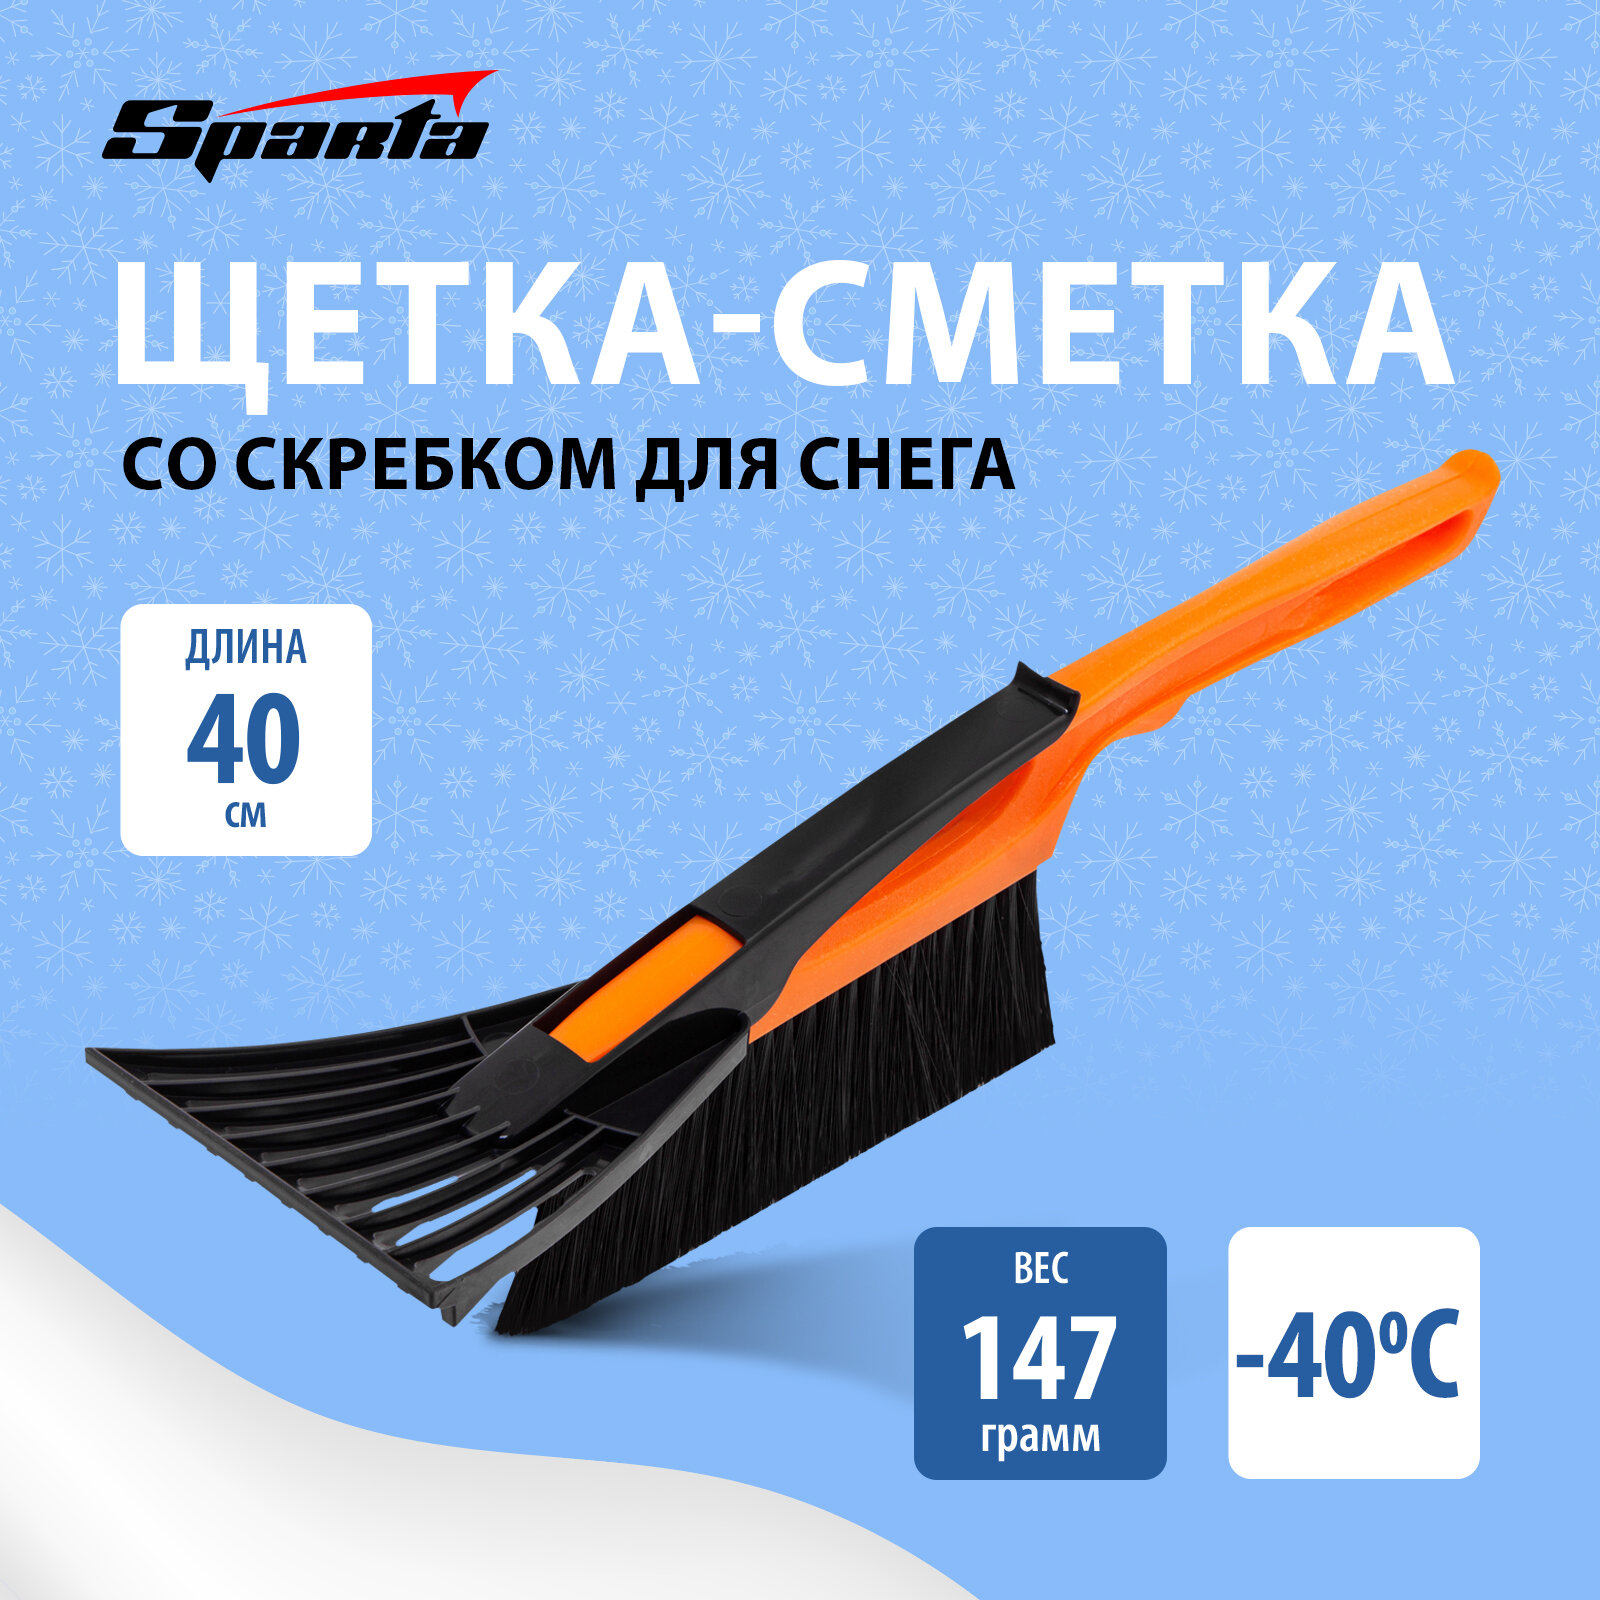 Щеткаетка для снега со скребком 400 Россия // Sparta